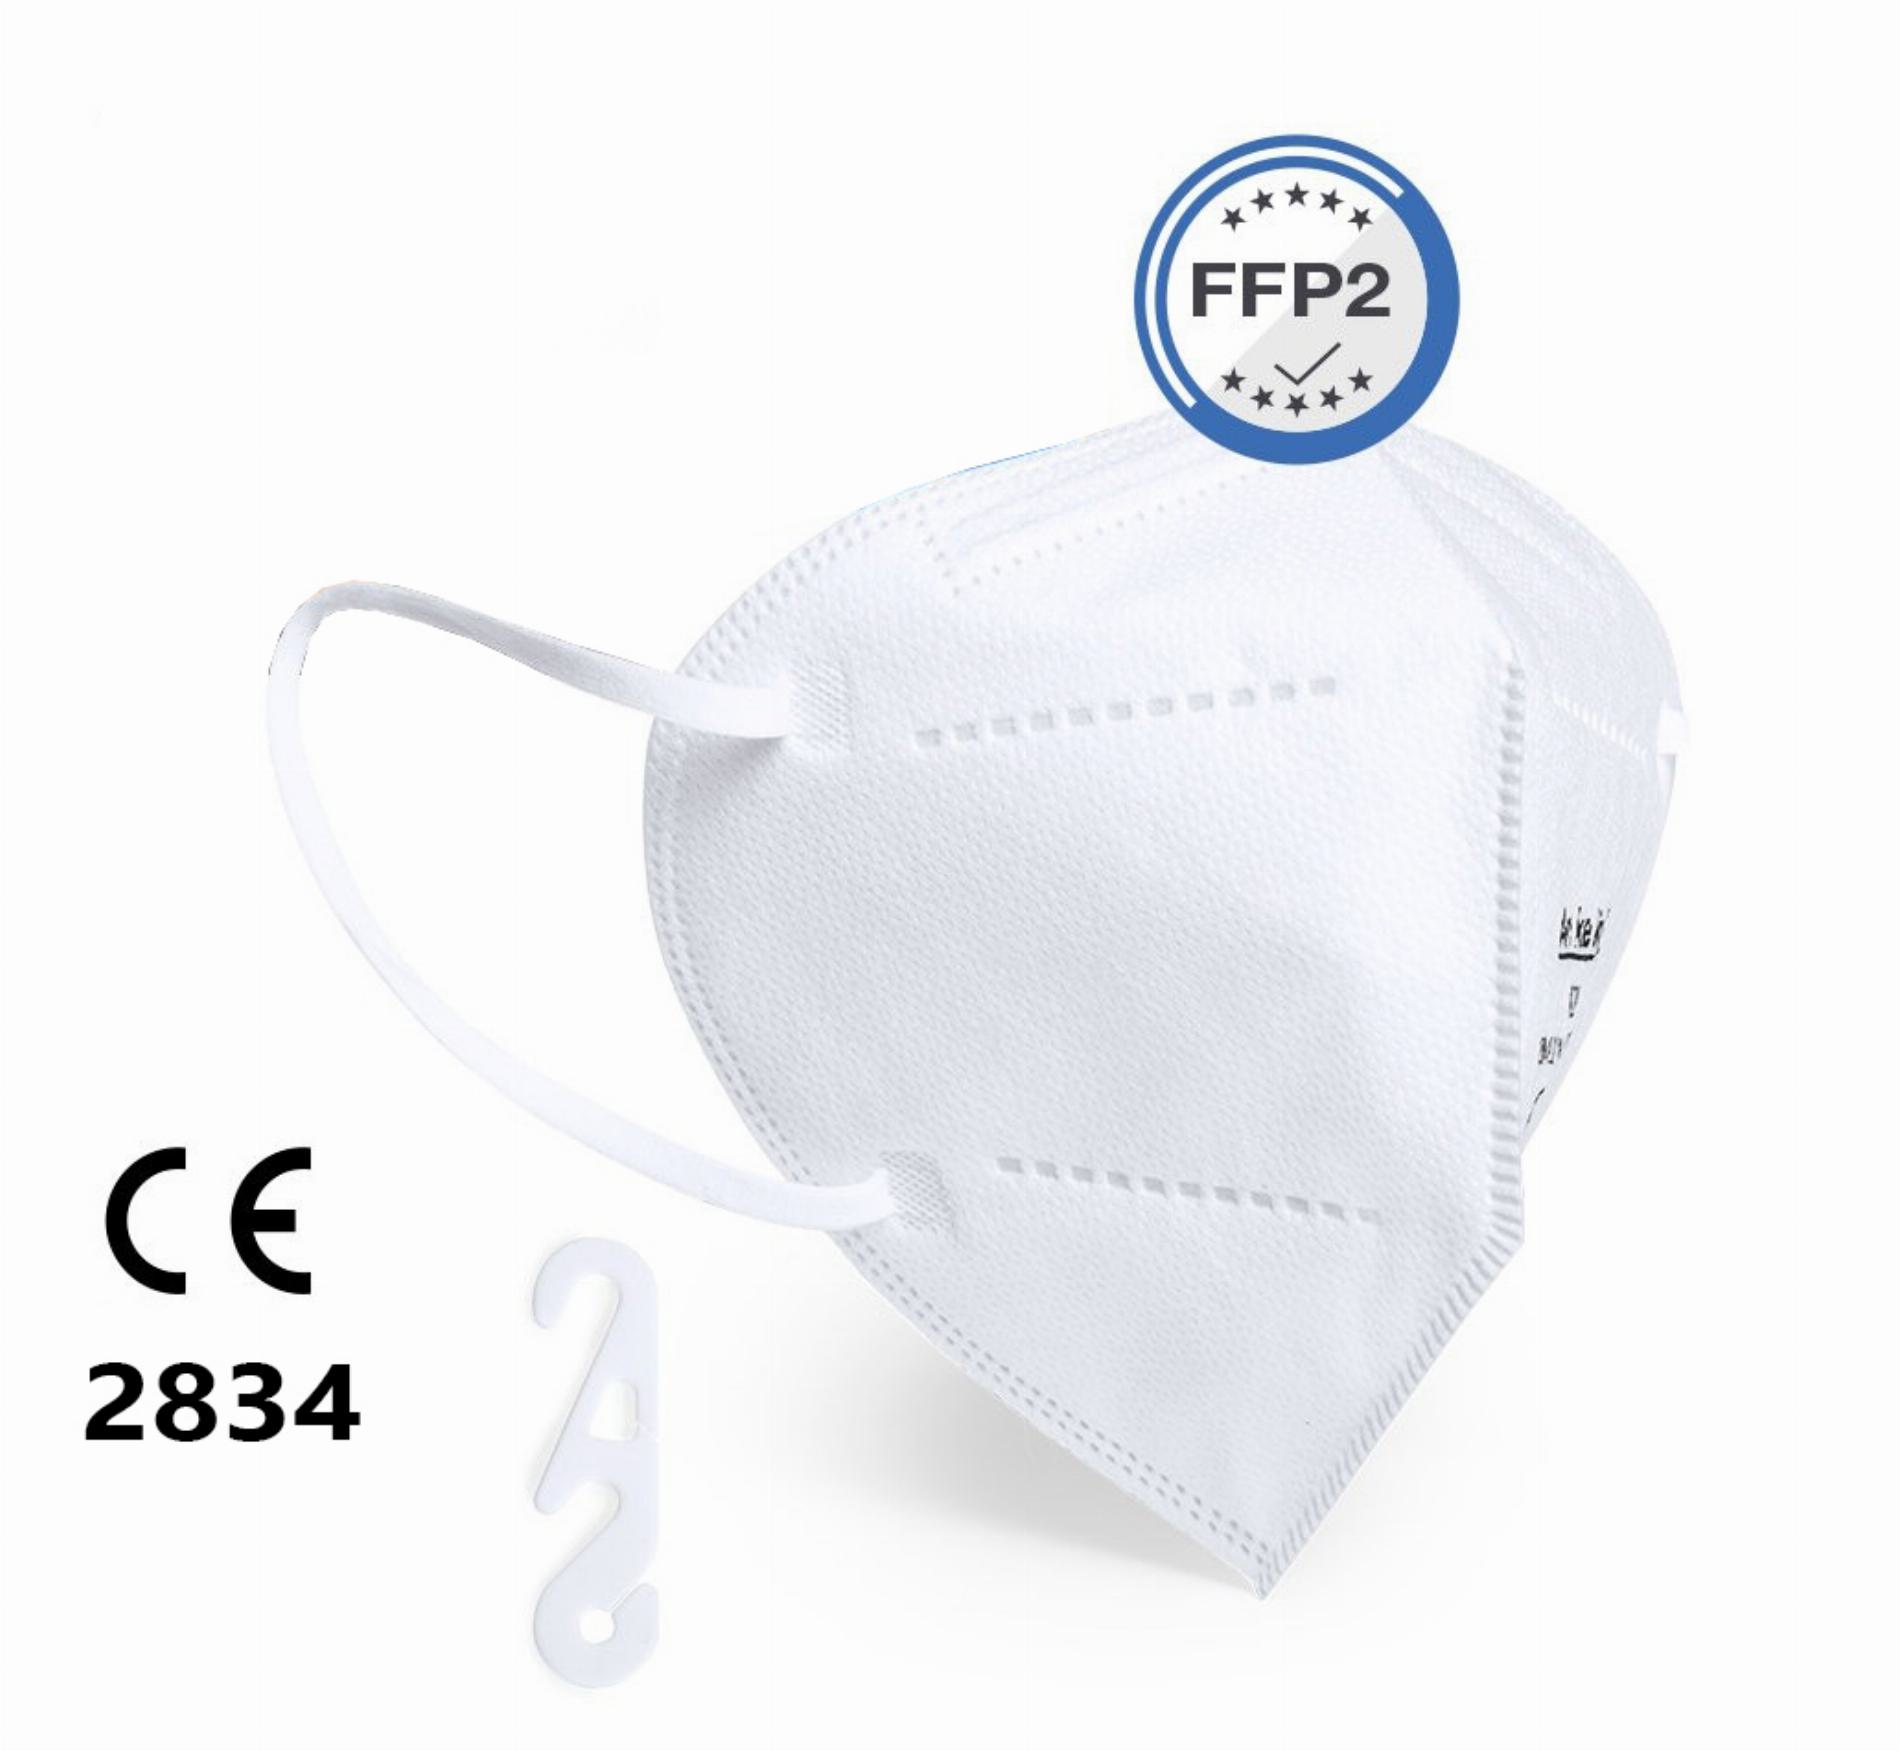 5 x FFP2 Maske faltbar, mit Gummizügen (ISO CE 2834)